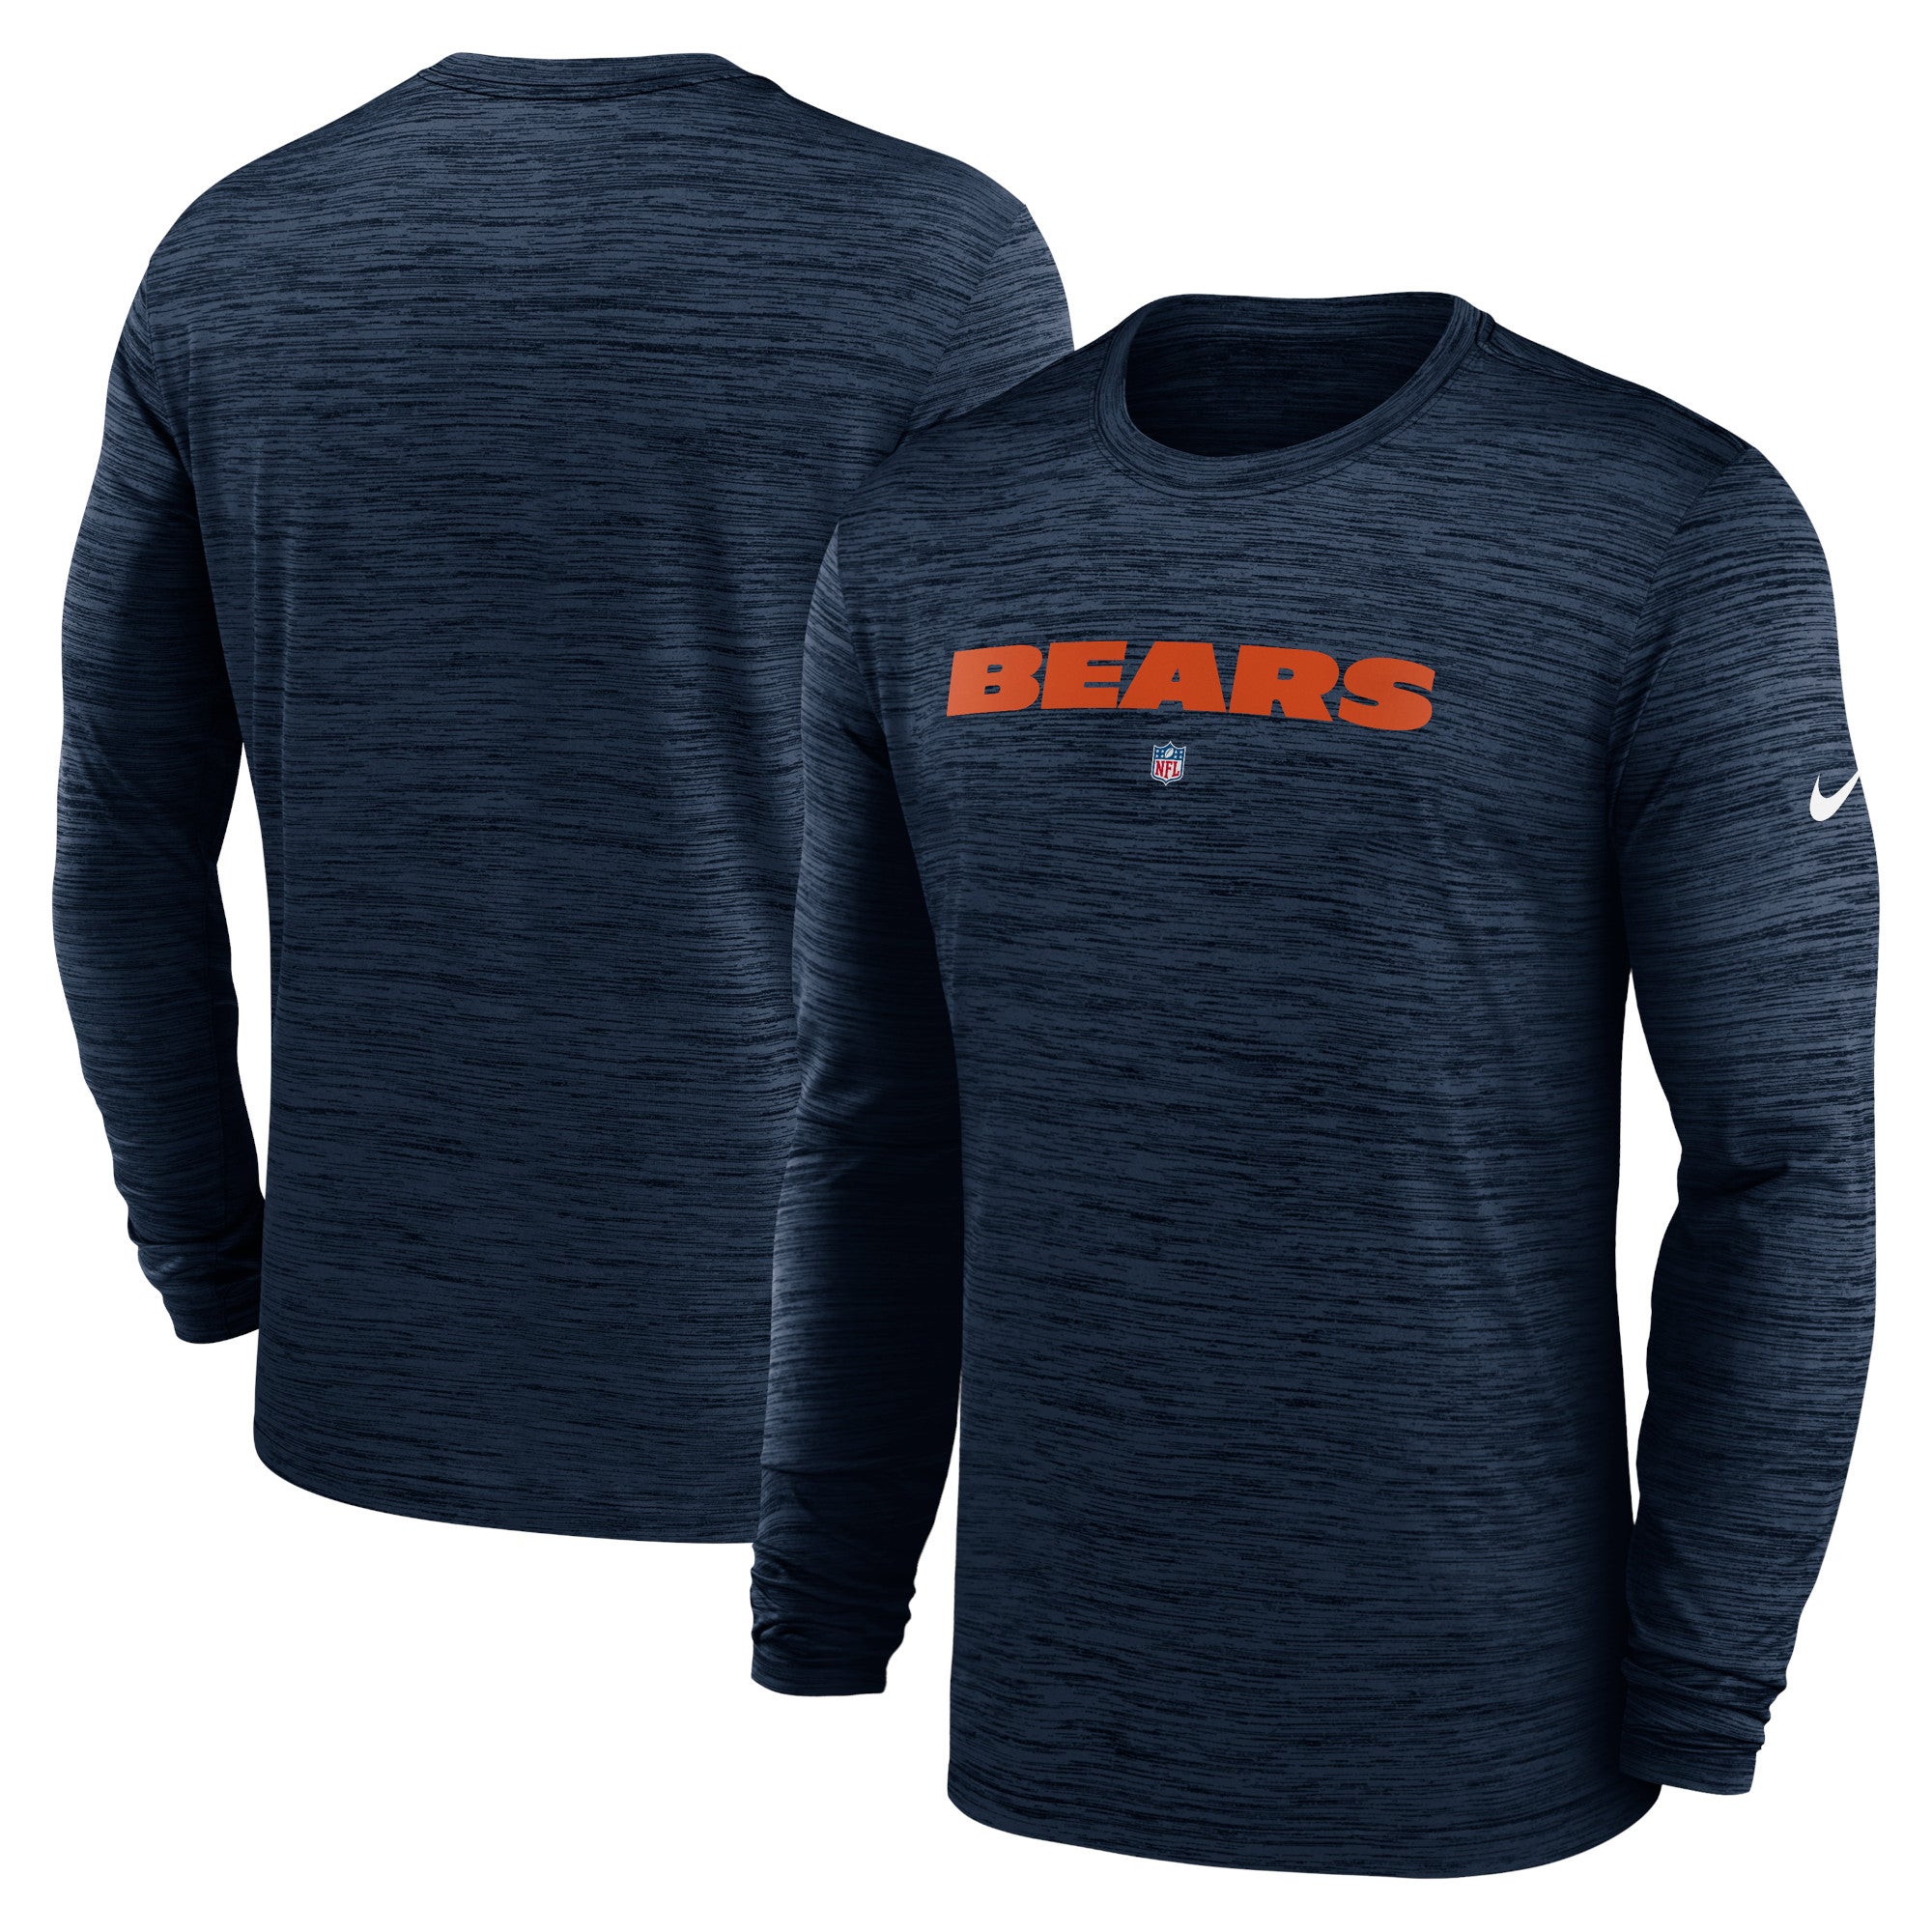 Nike Bears Sideline Team Velocity Long Sleeve T-Shirt - Men's